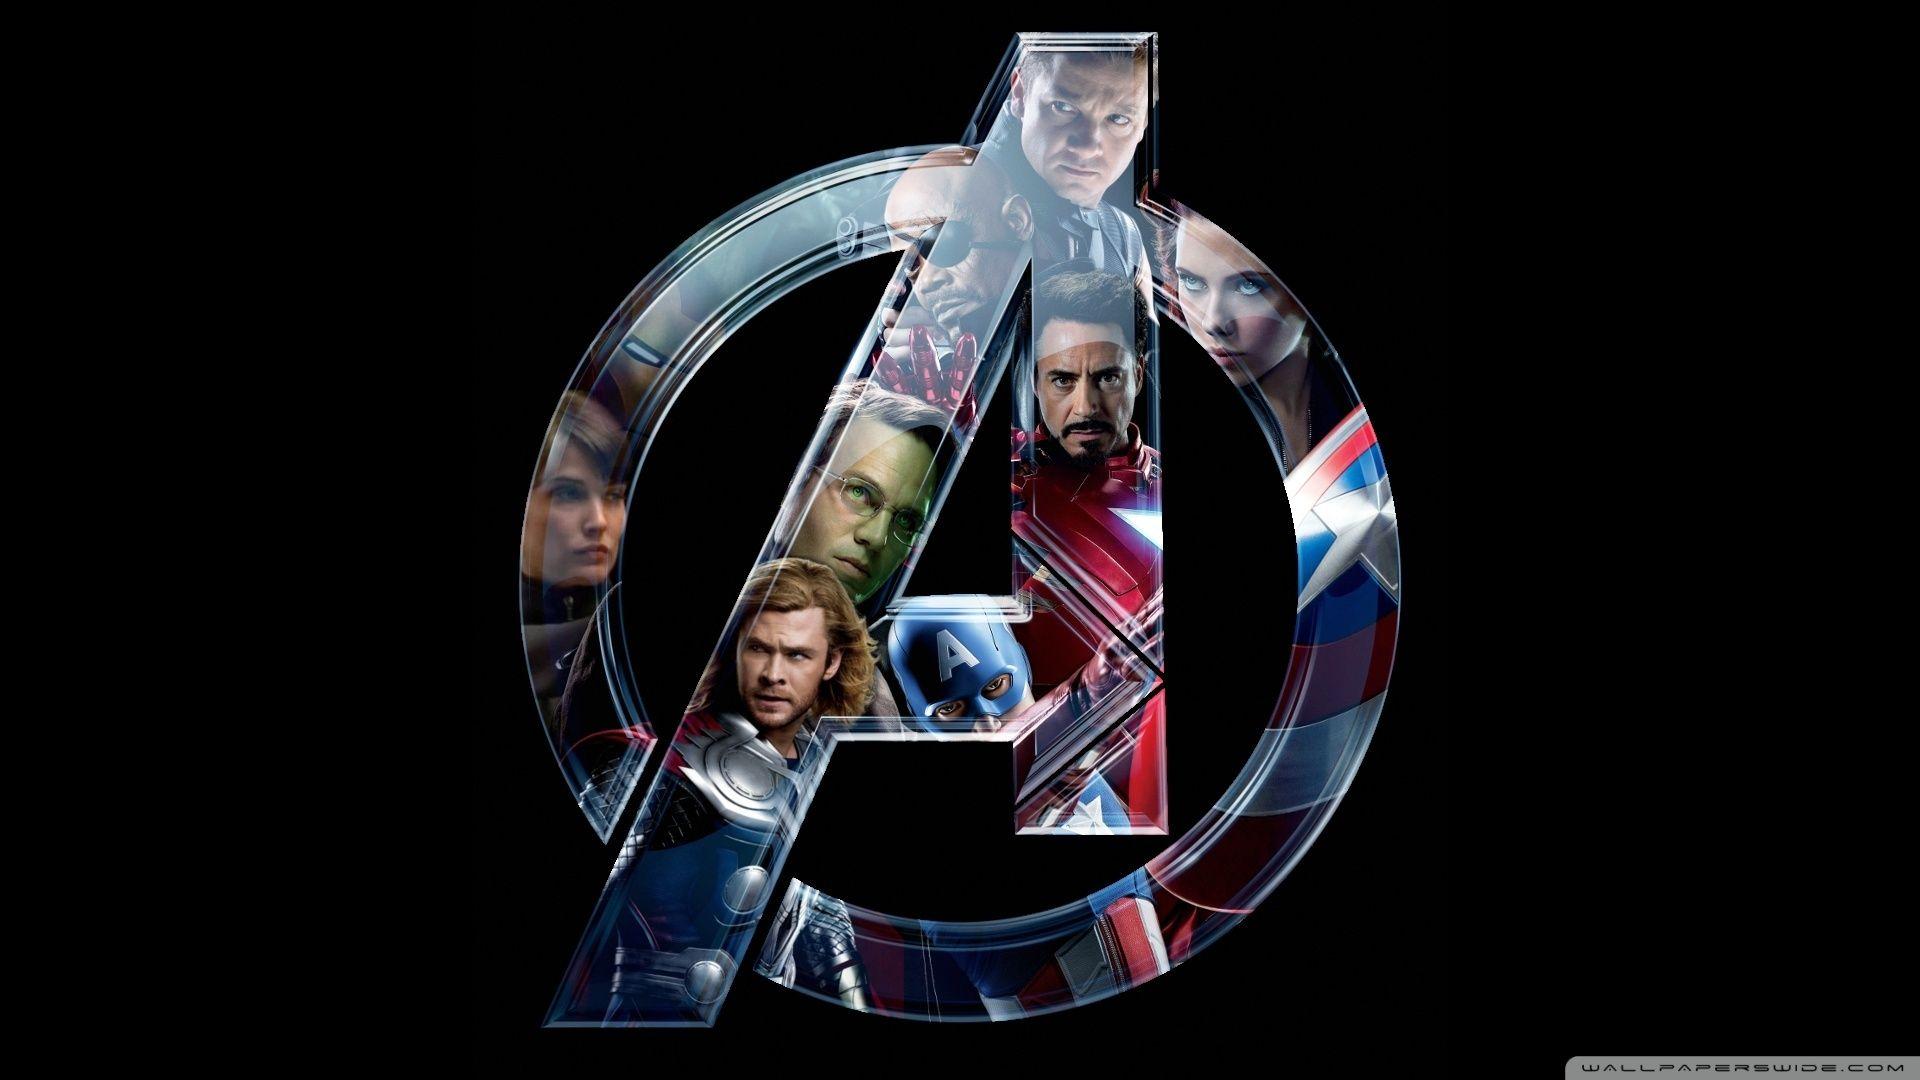 Marvel Avengers pics.jpg